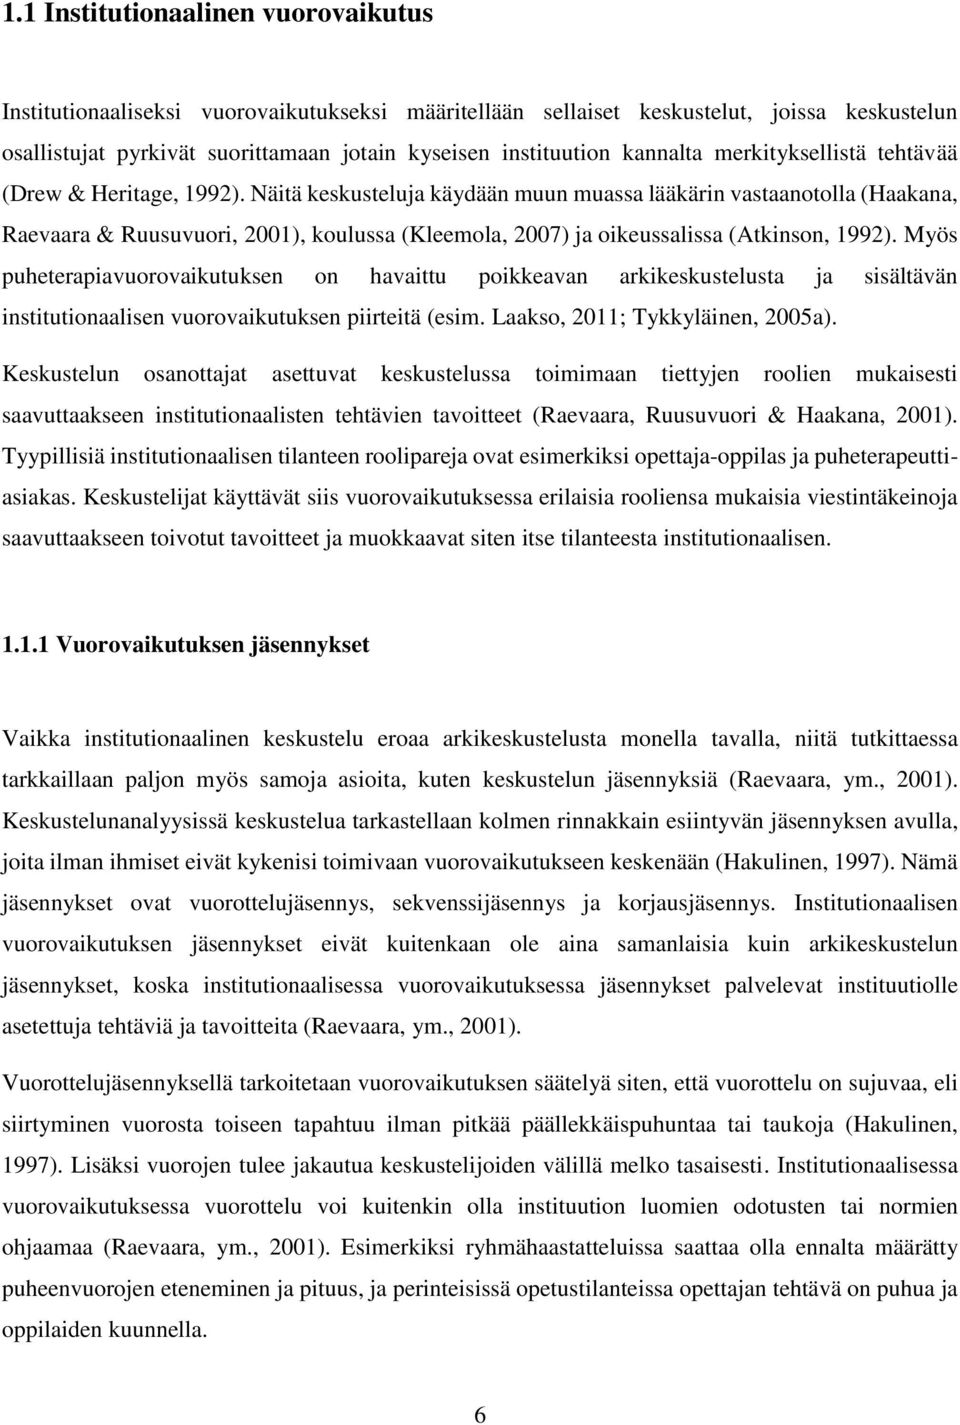 Näitä keskusteluja käydään muun muassa lääkärin vastaanotolla (Haakana, Raevaara & Ruusuvuori, 2001), koulussa (Kleemola, 2007) ja oikeussalissa (Atkinson, 1992).